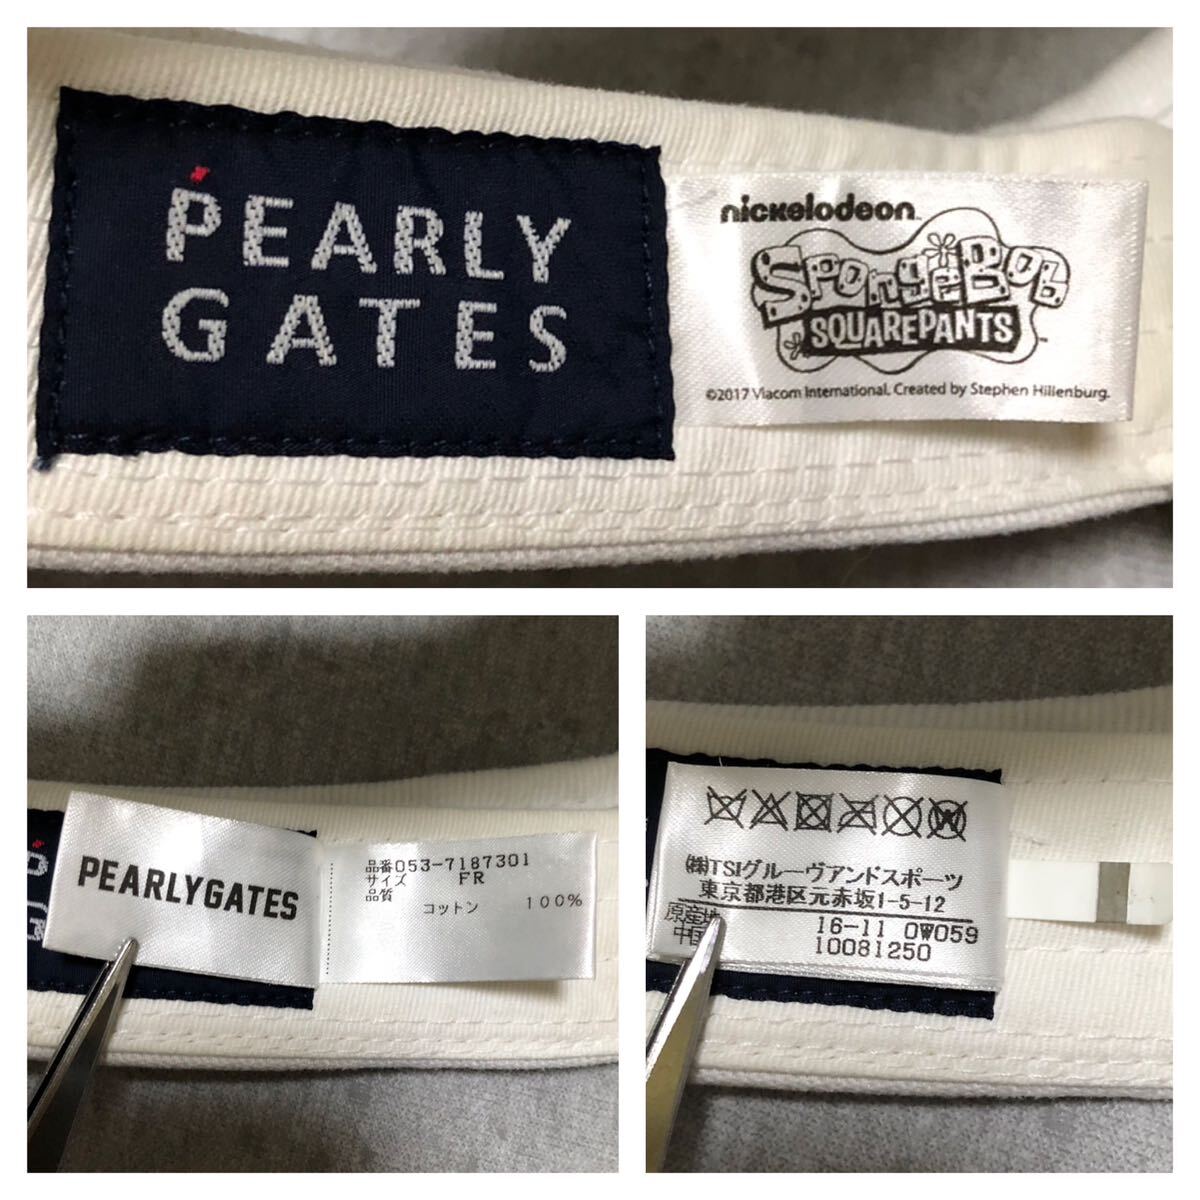 941*PEARLY GATES Pearly Gates * большой Logo ba колено губка Bob вышивка хлопок Golf козырек белый FR